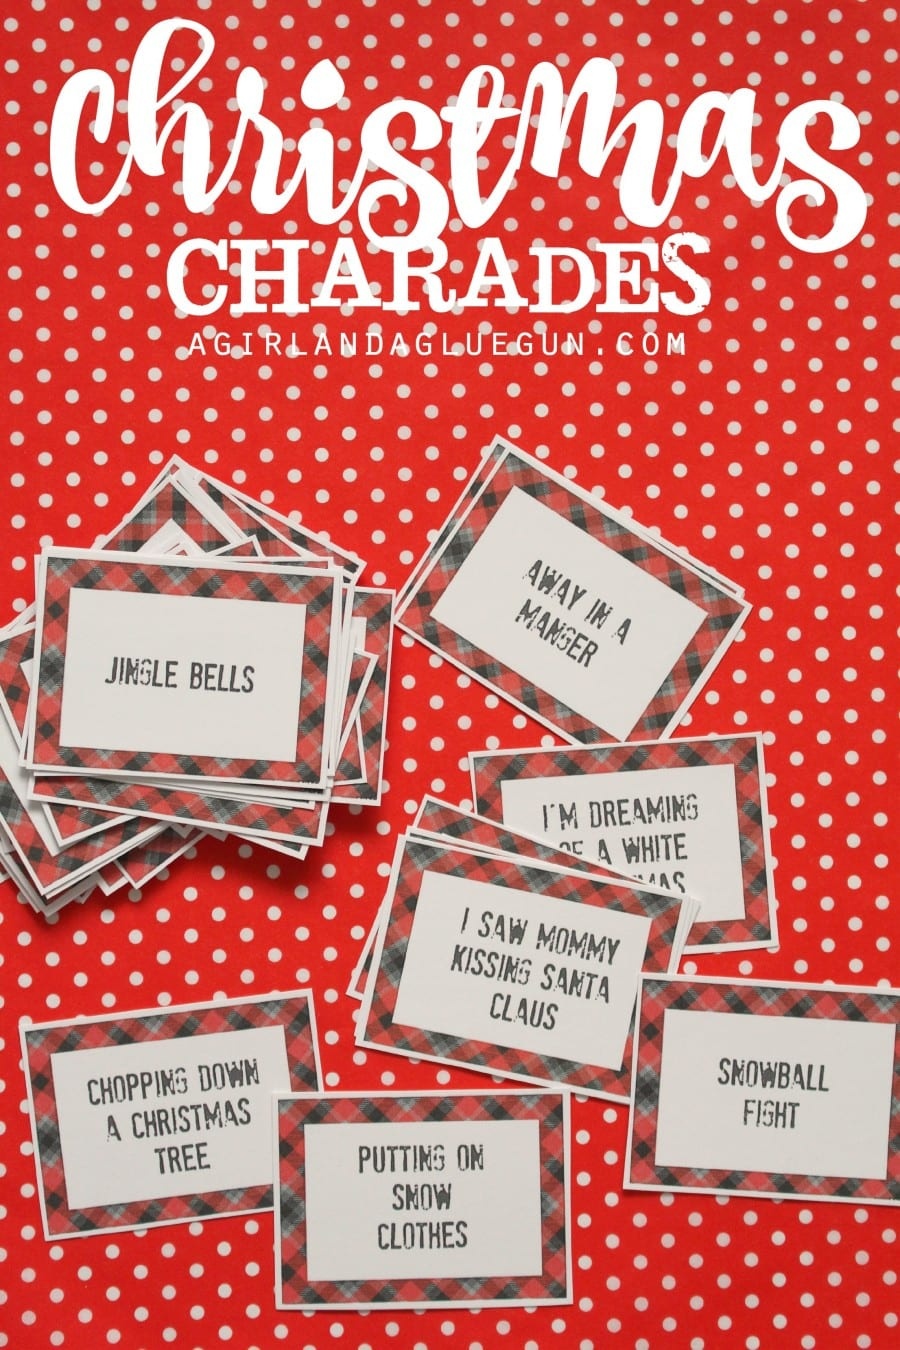 Christmas Charades Game And Free Printable Roundup! - A Girl And A - Free Printable Christmas Games For Family Gatherings